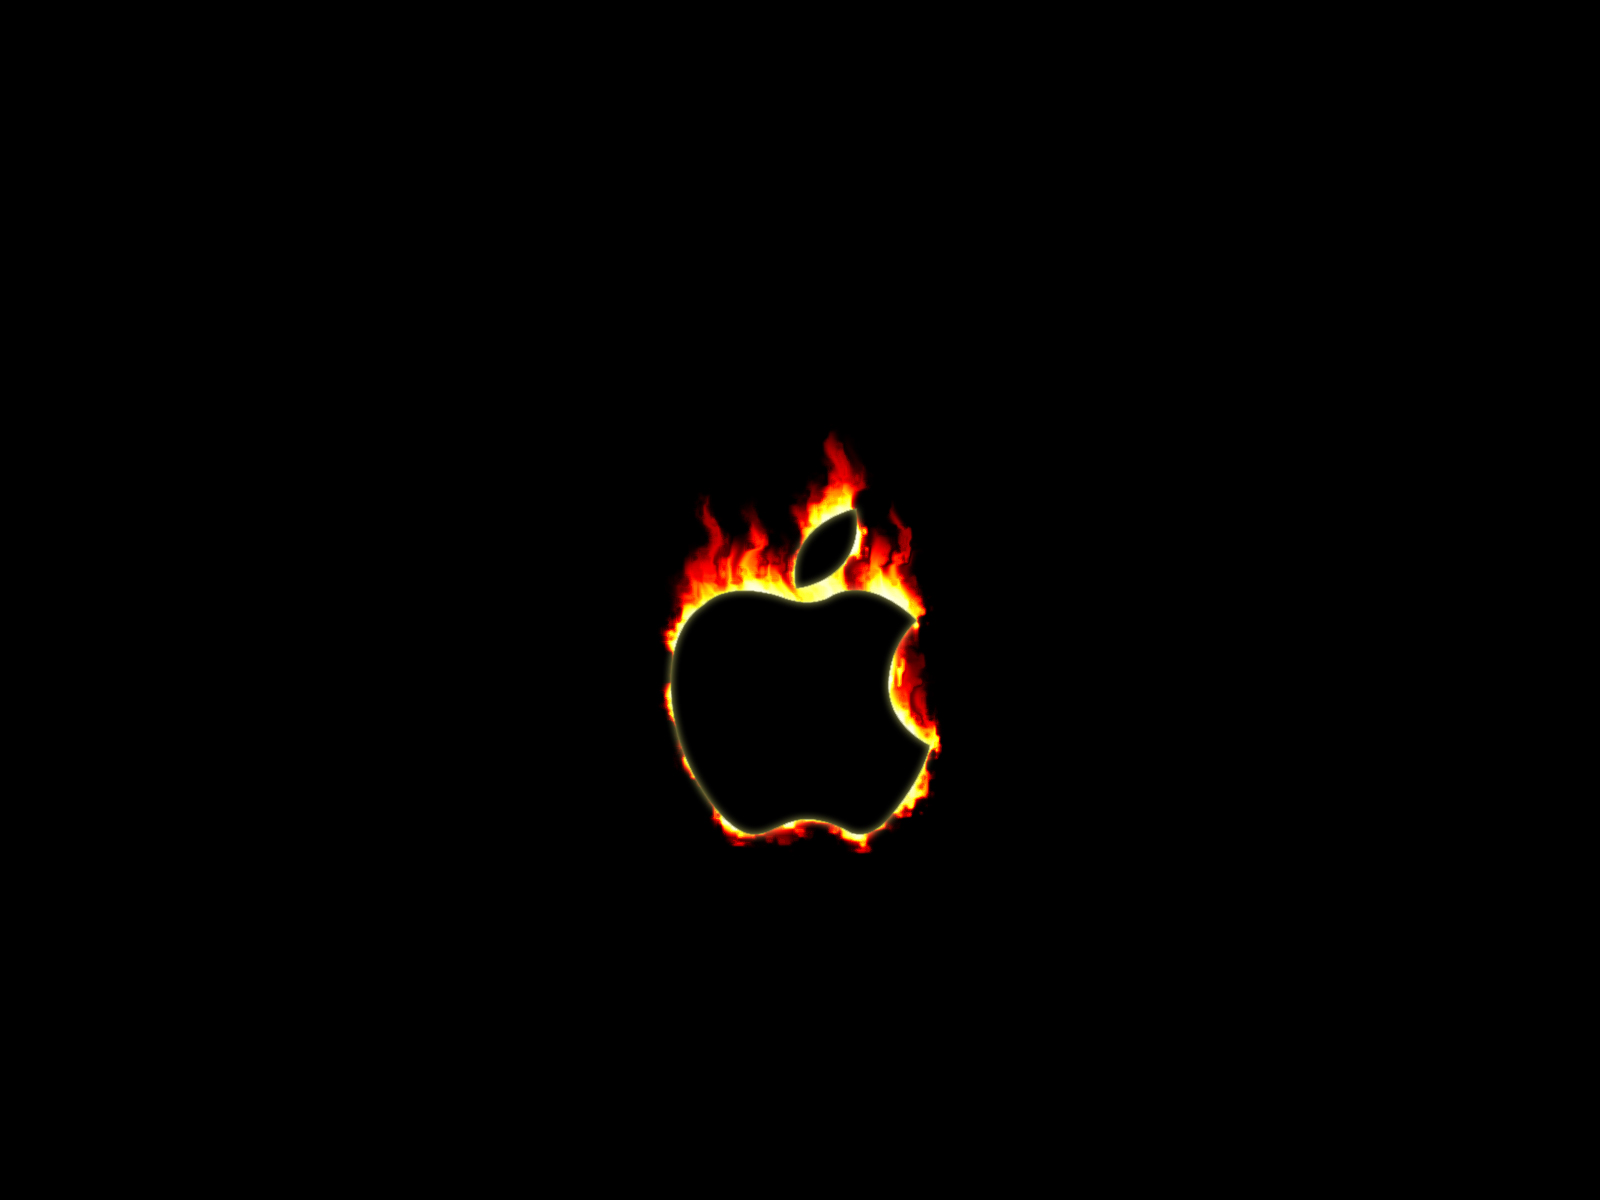 Apple fire